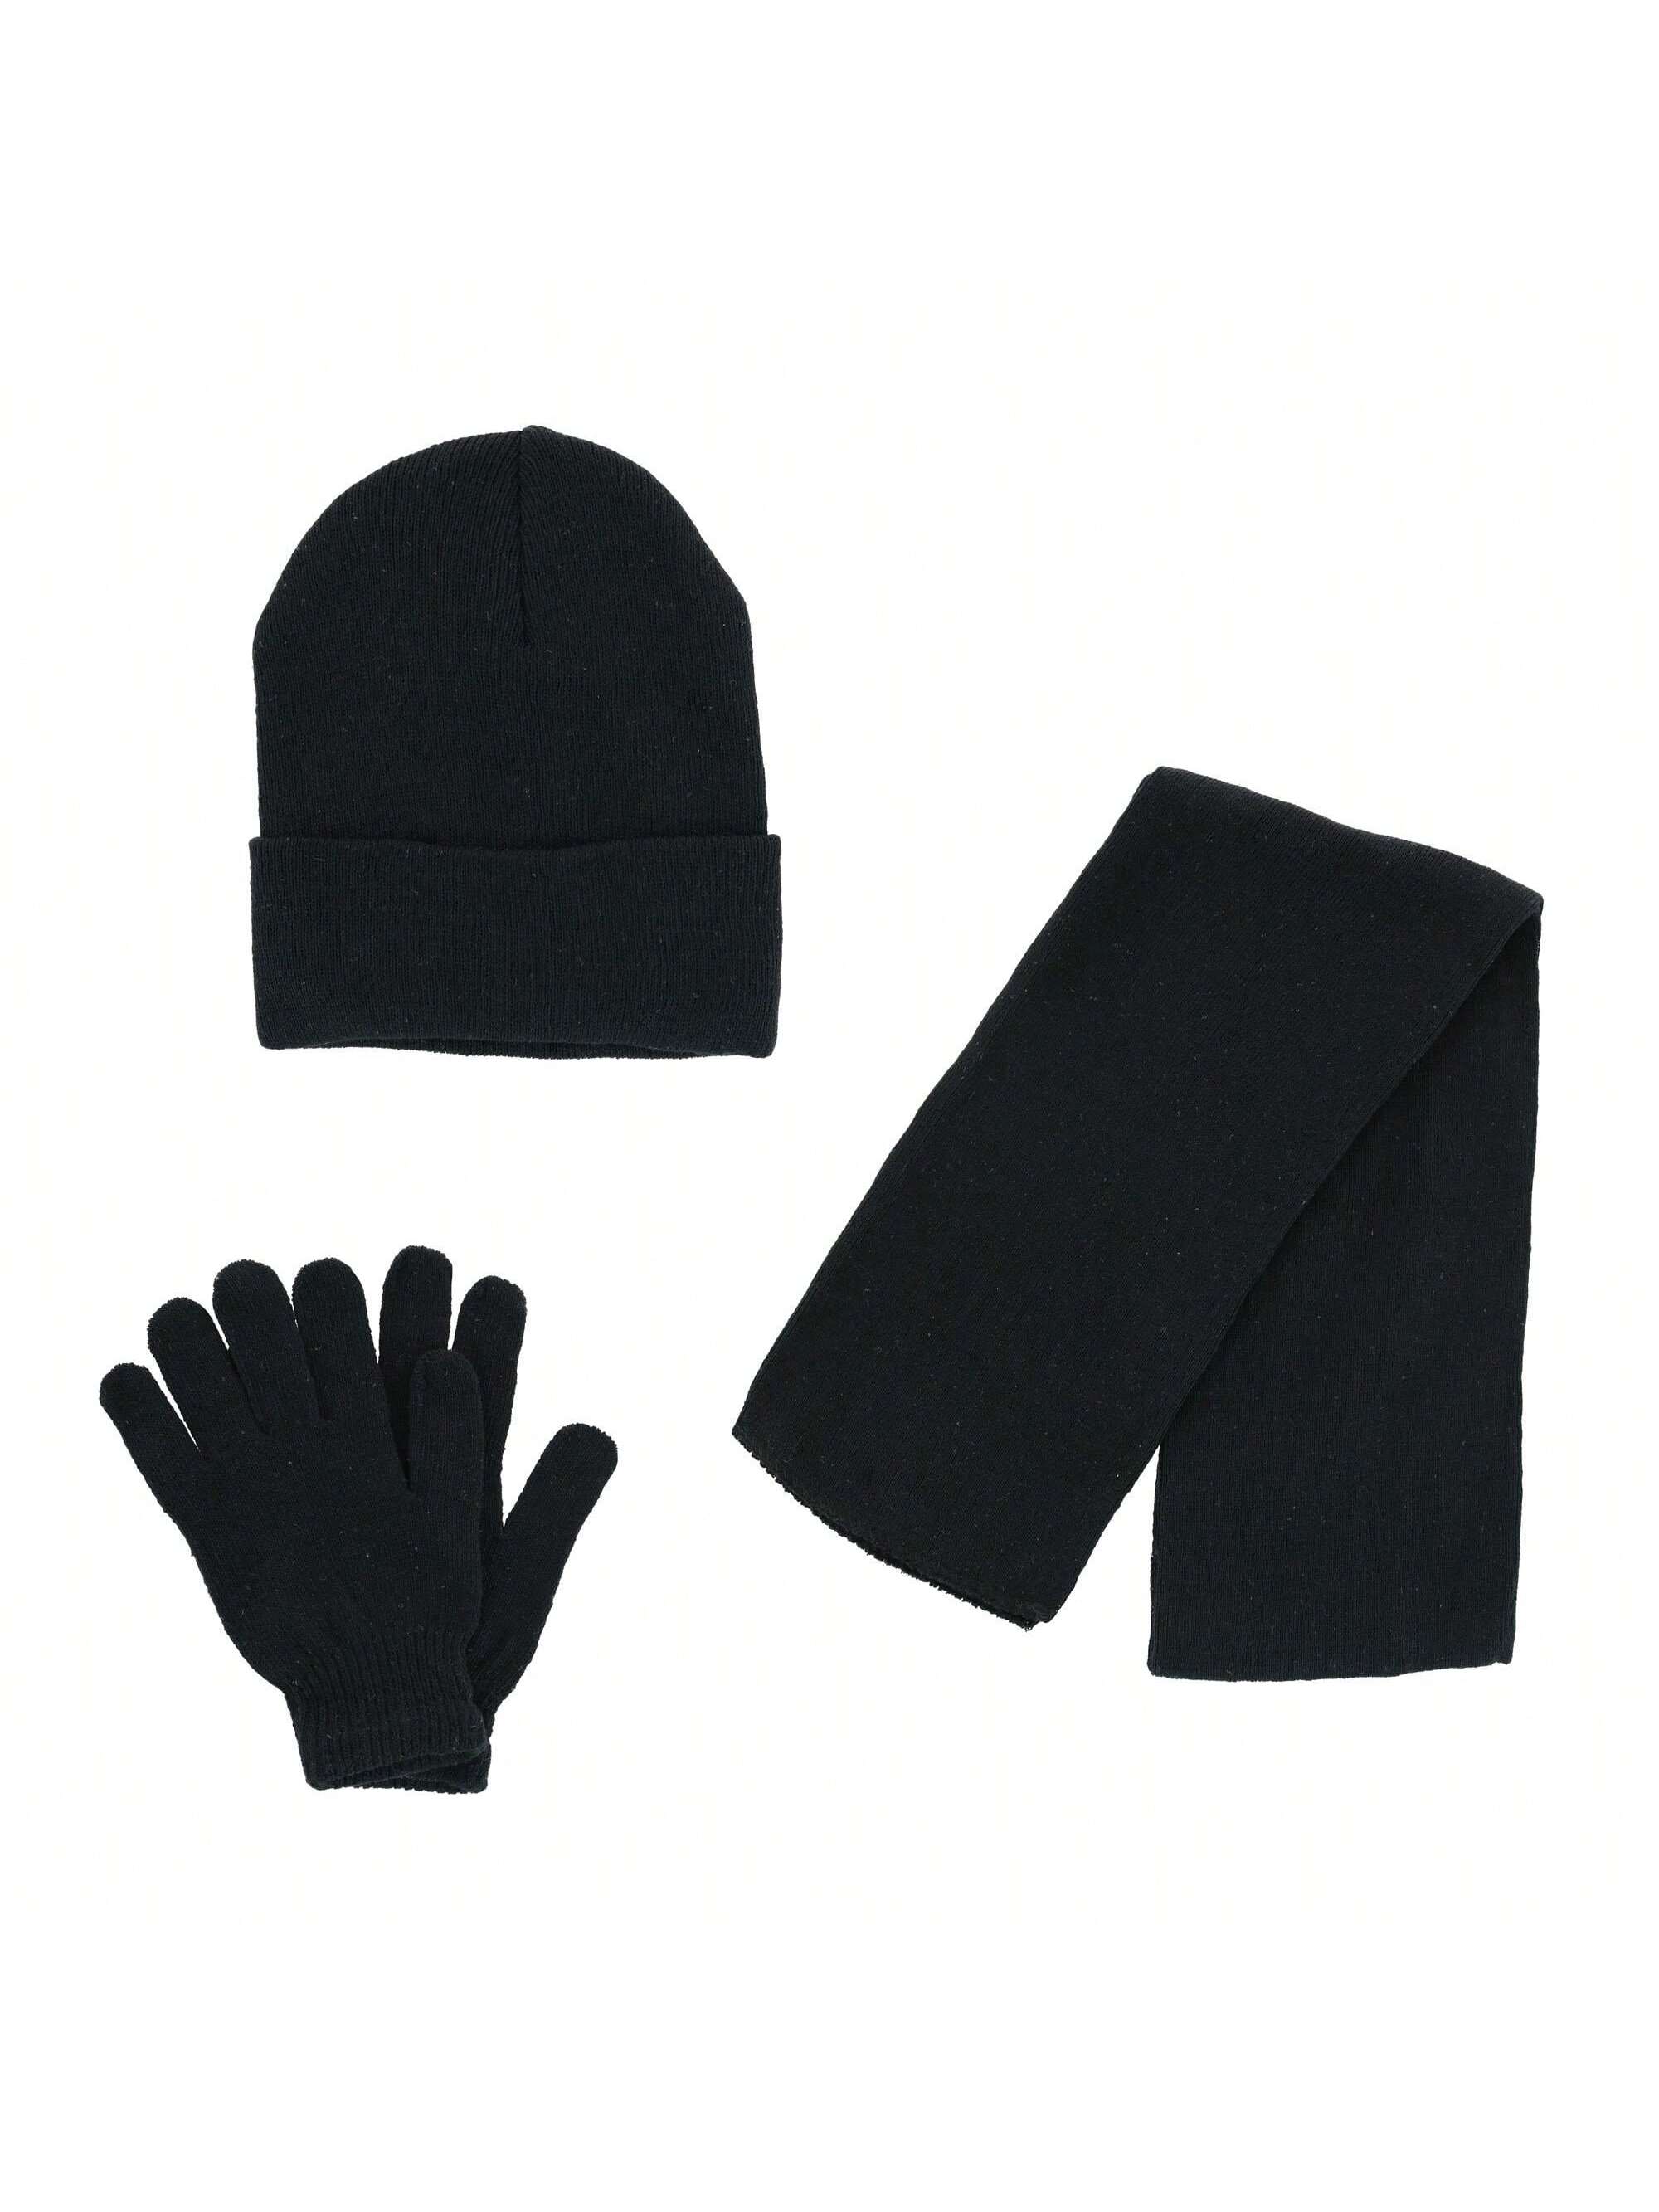 Базовая шапка-бини CTM, комплект из шарфа и перчаток, черный базовая шапка бини ctm комплект из шарфа и перчаток черный